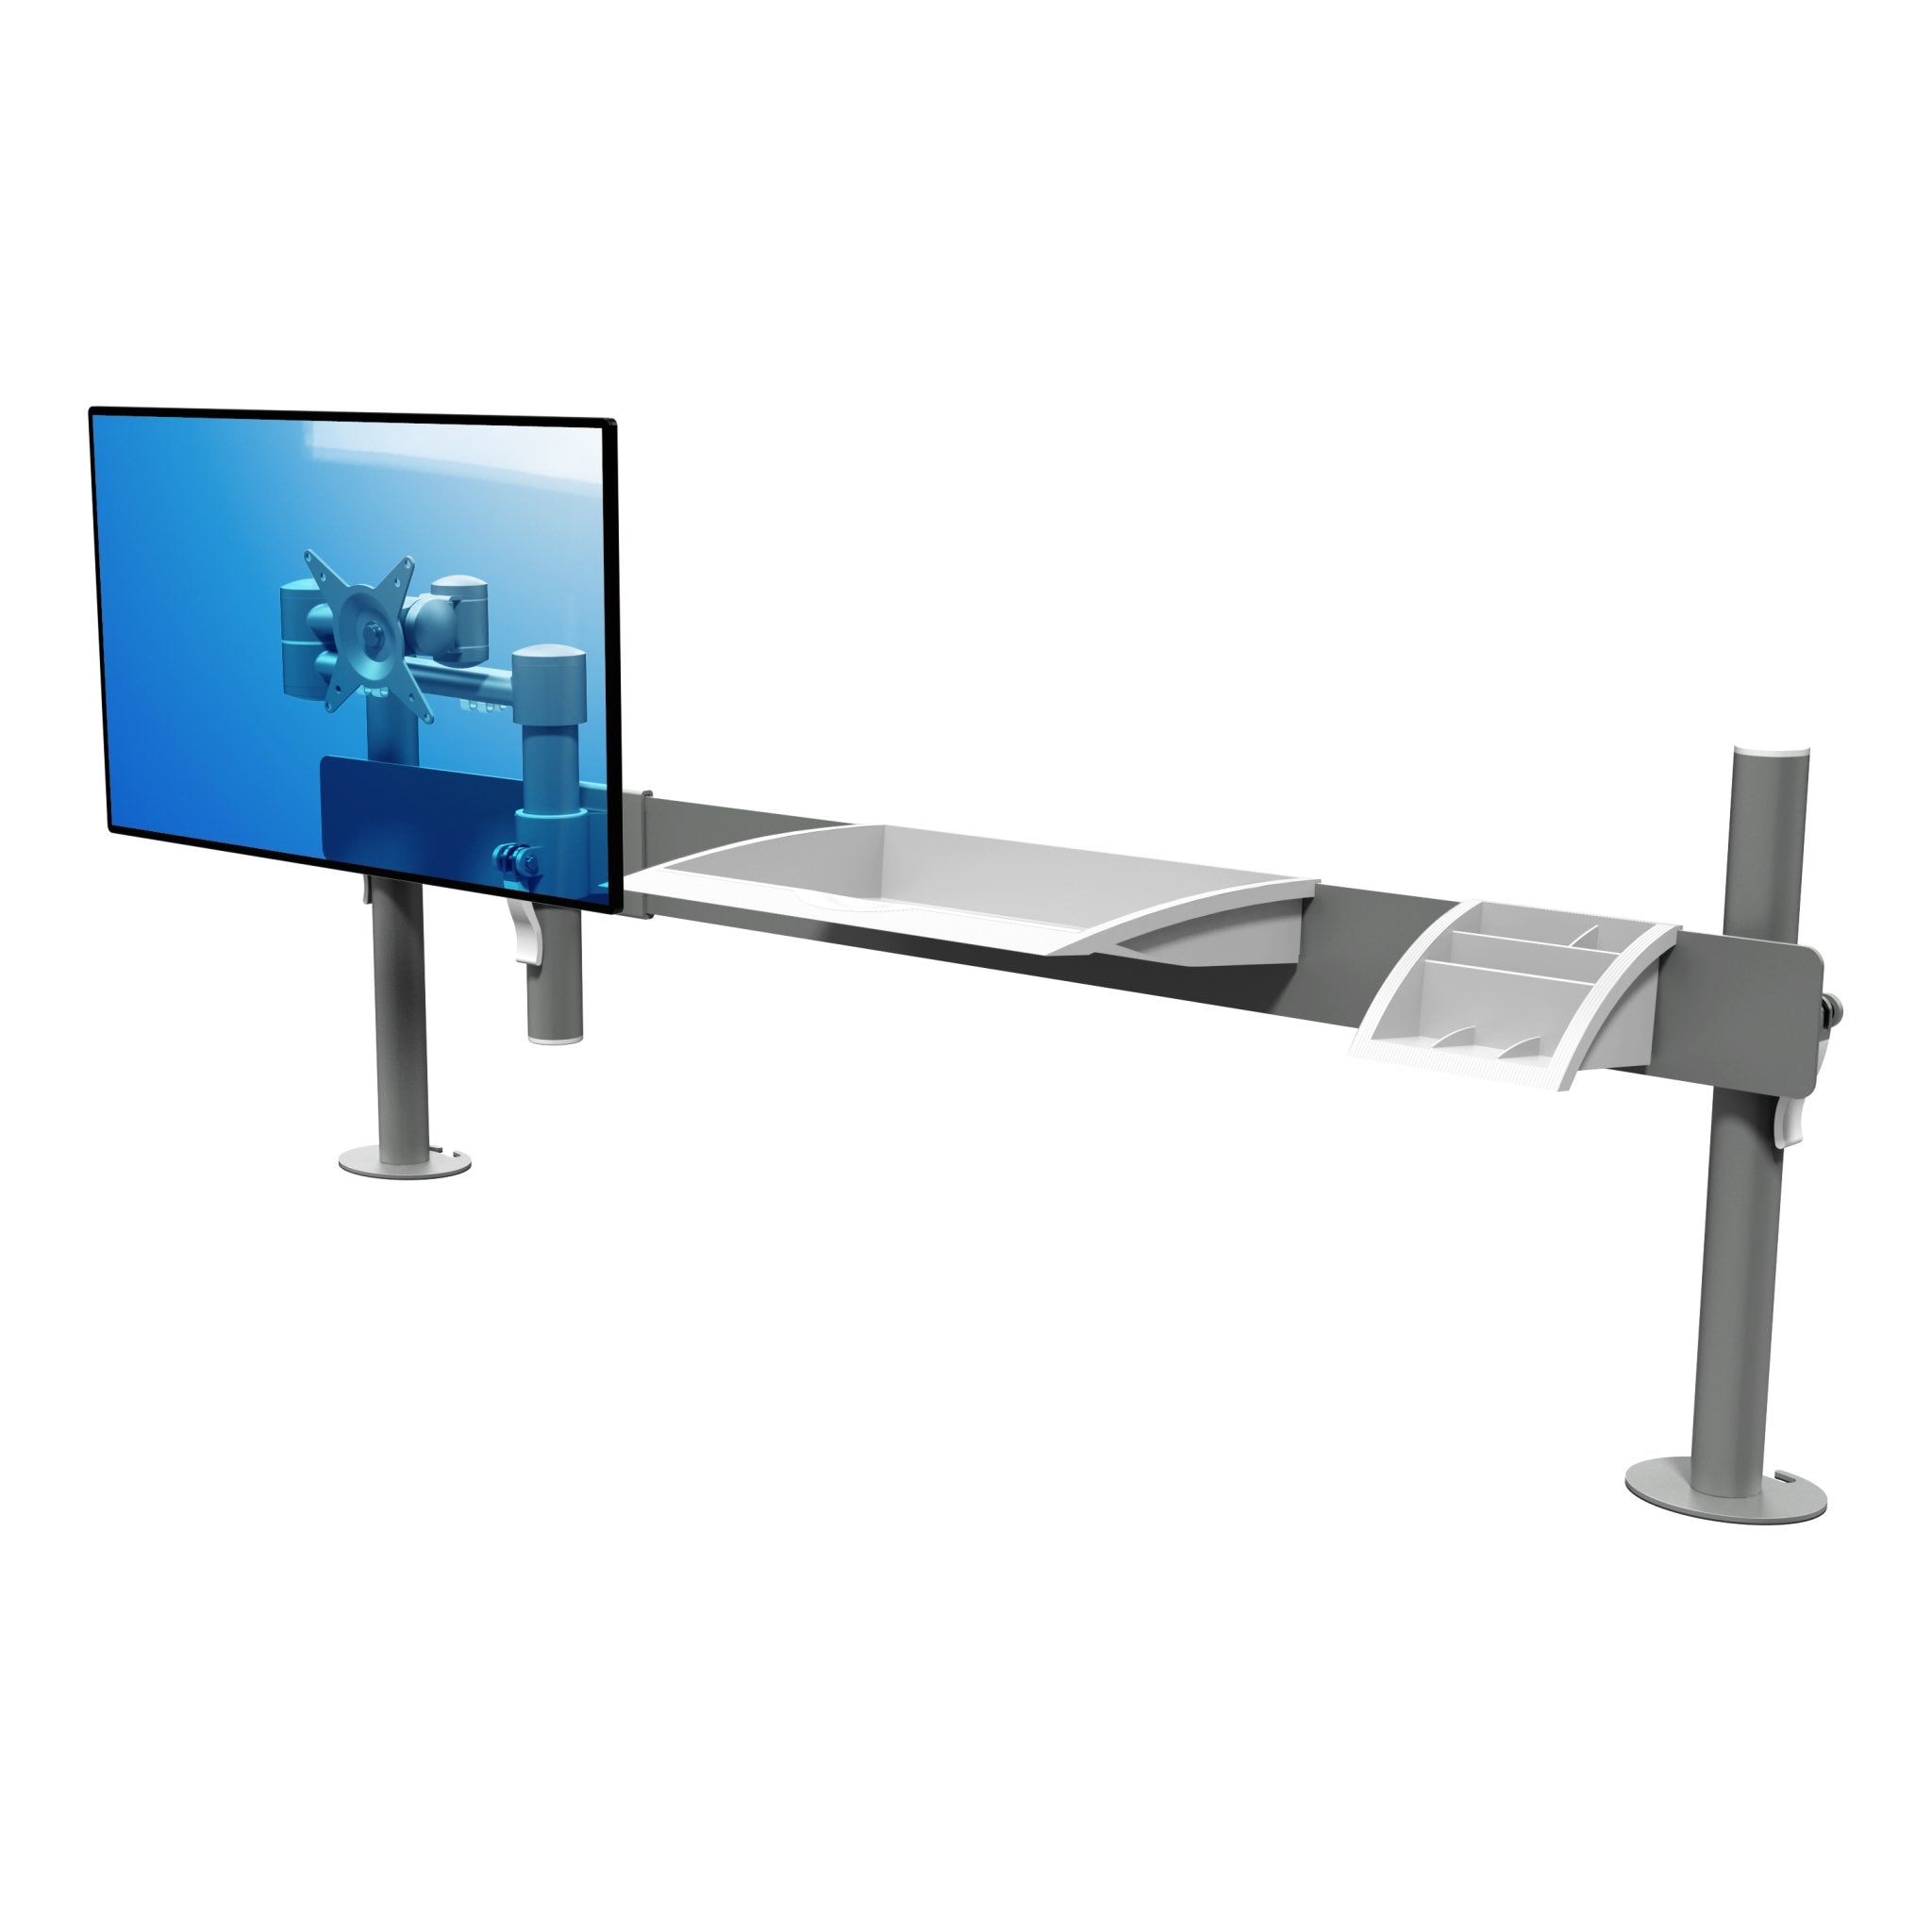 Zilveren ergonomische toolbar met gemonteerde monitorarm en scherm uit de Viewmate collectie van Dataflex